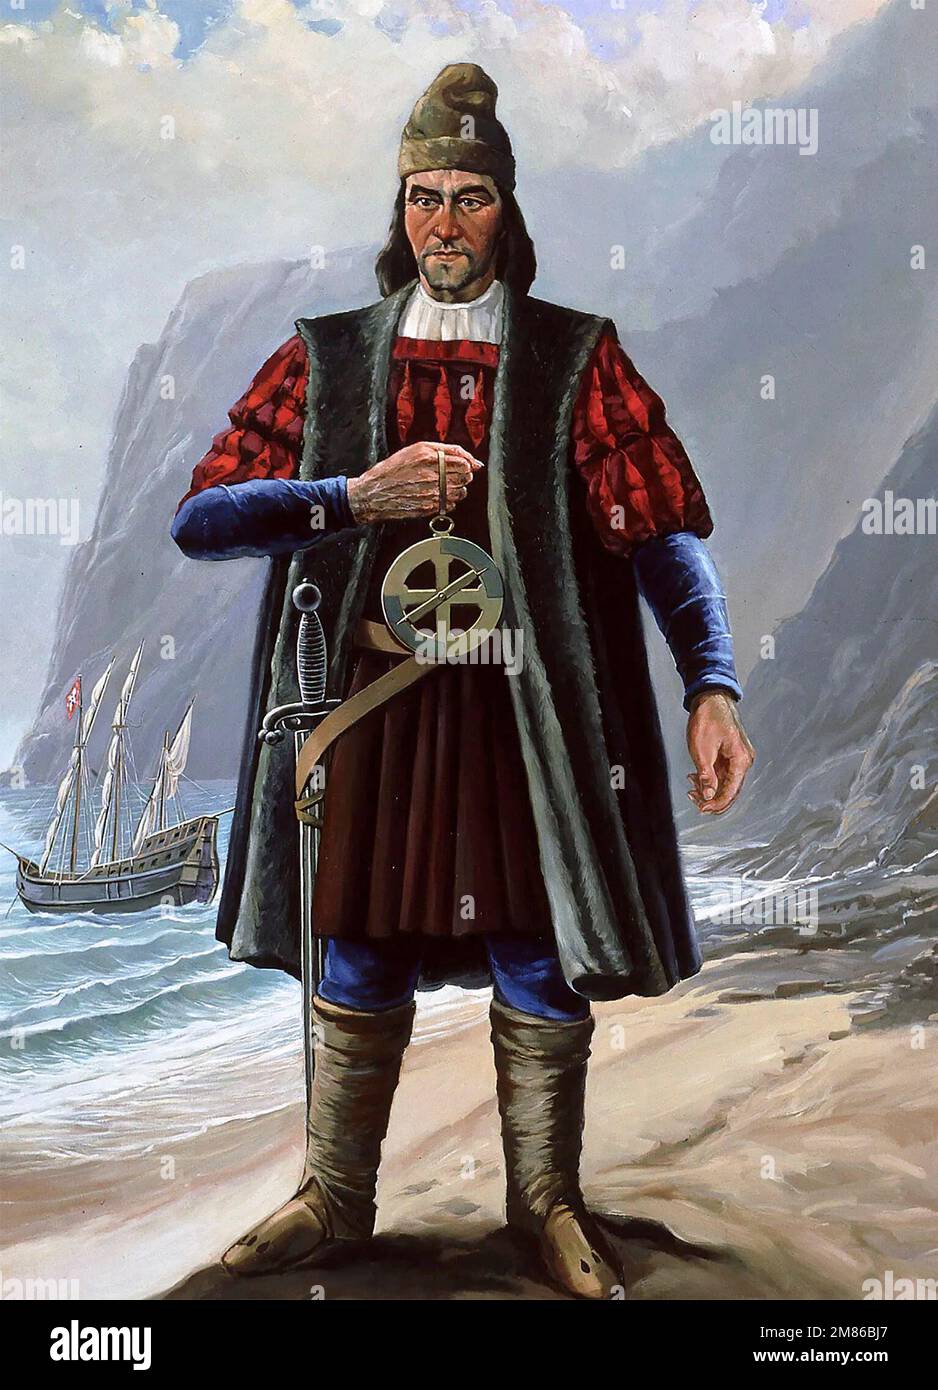 Dias. Bartolomeu Portrait de l'explorateur et marin portugais, Bartolomeu Dias (1450-1500). Dias a été la première personne à naviguer autour de la pointe sud de l'Afrique en 1488. Banque D'Images